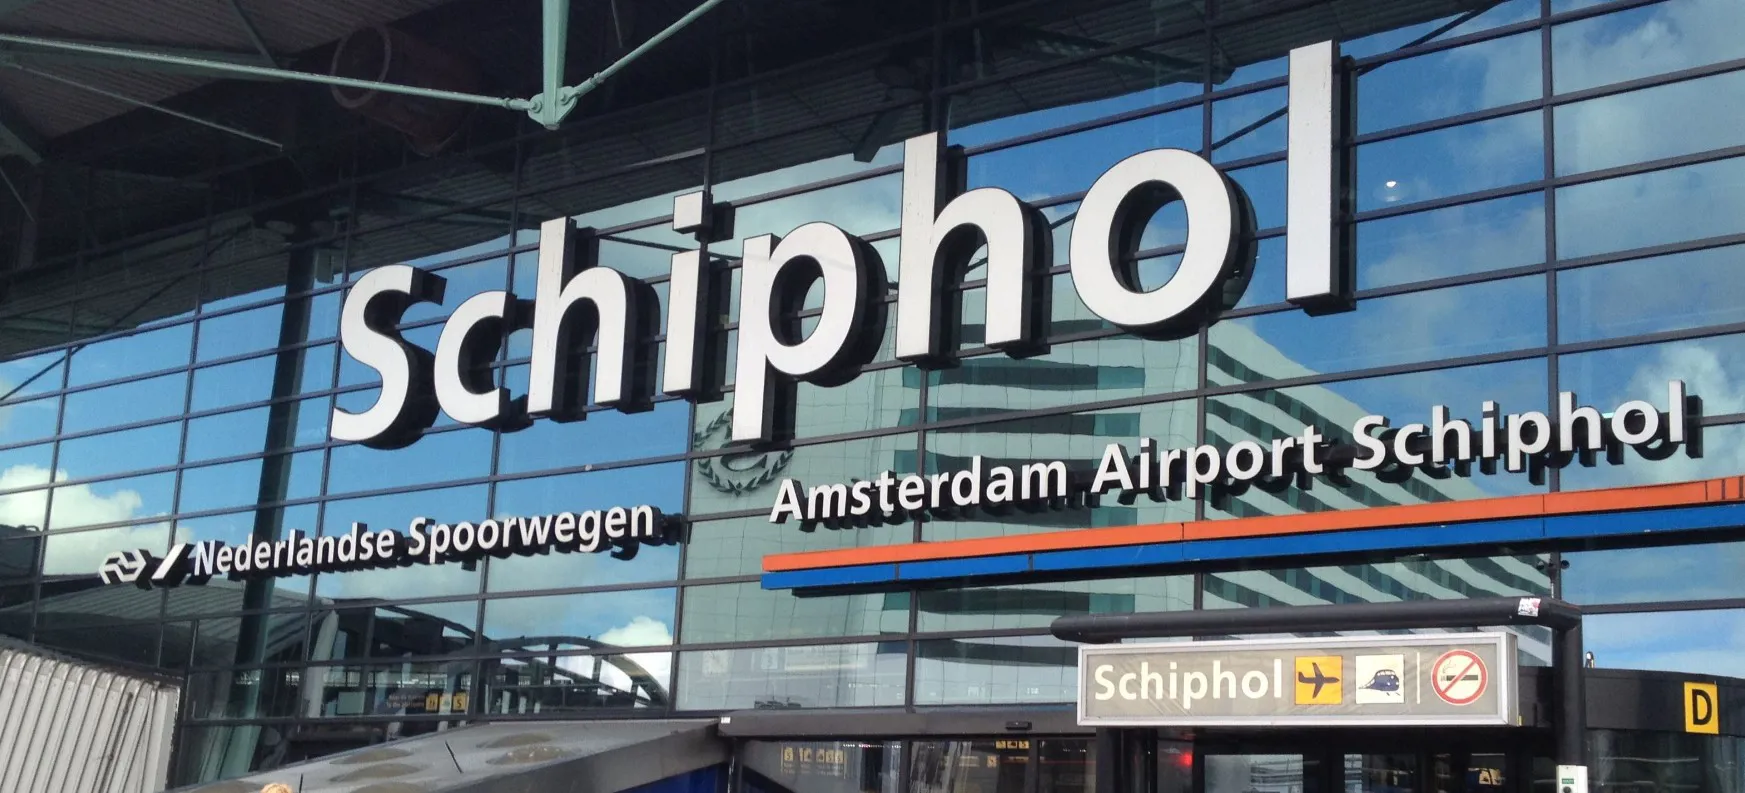 Schiphol Service | Supershortlease privé